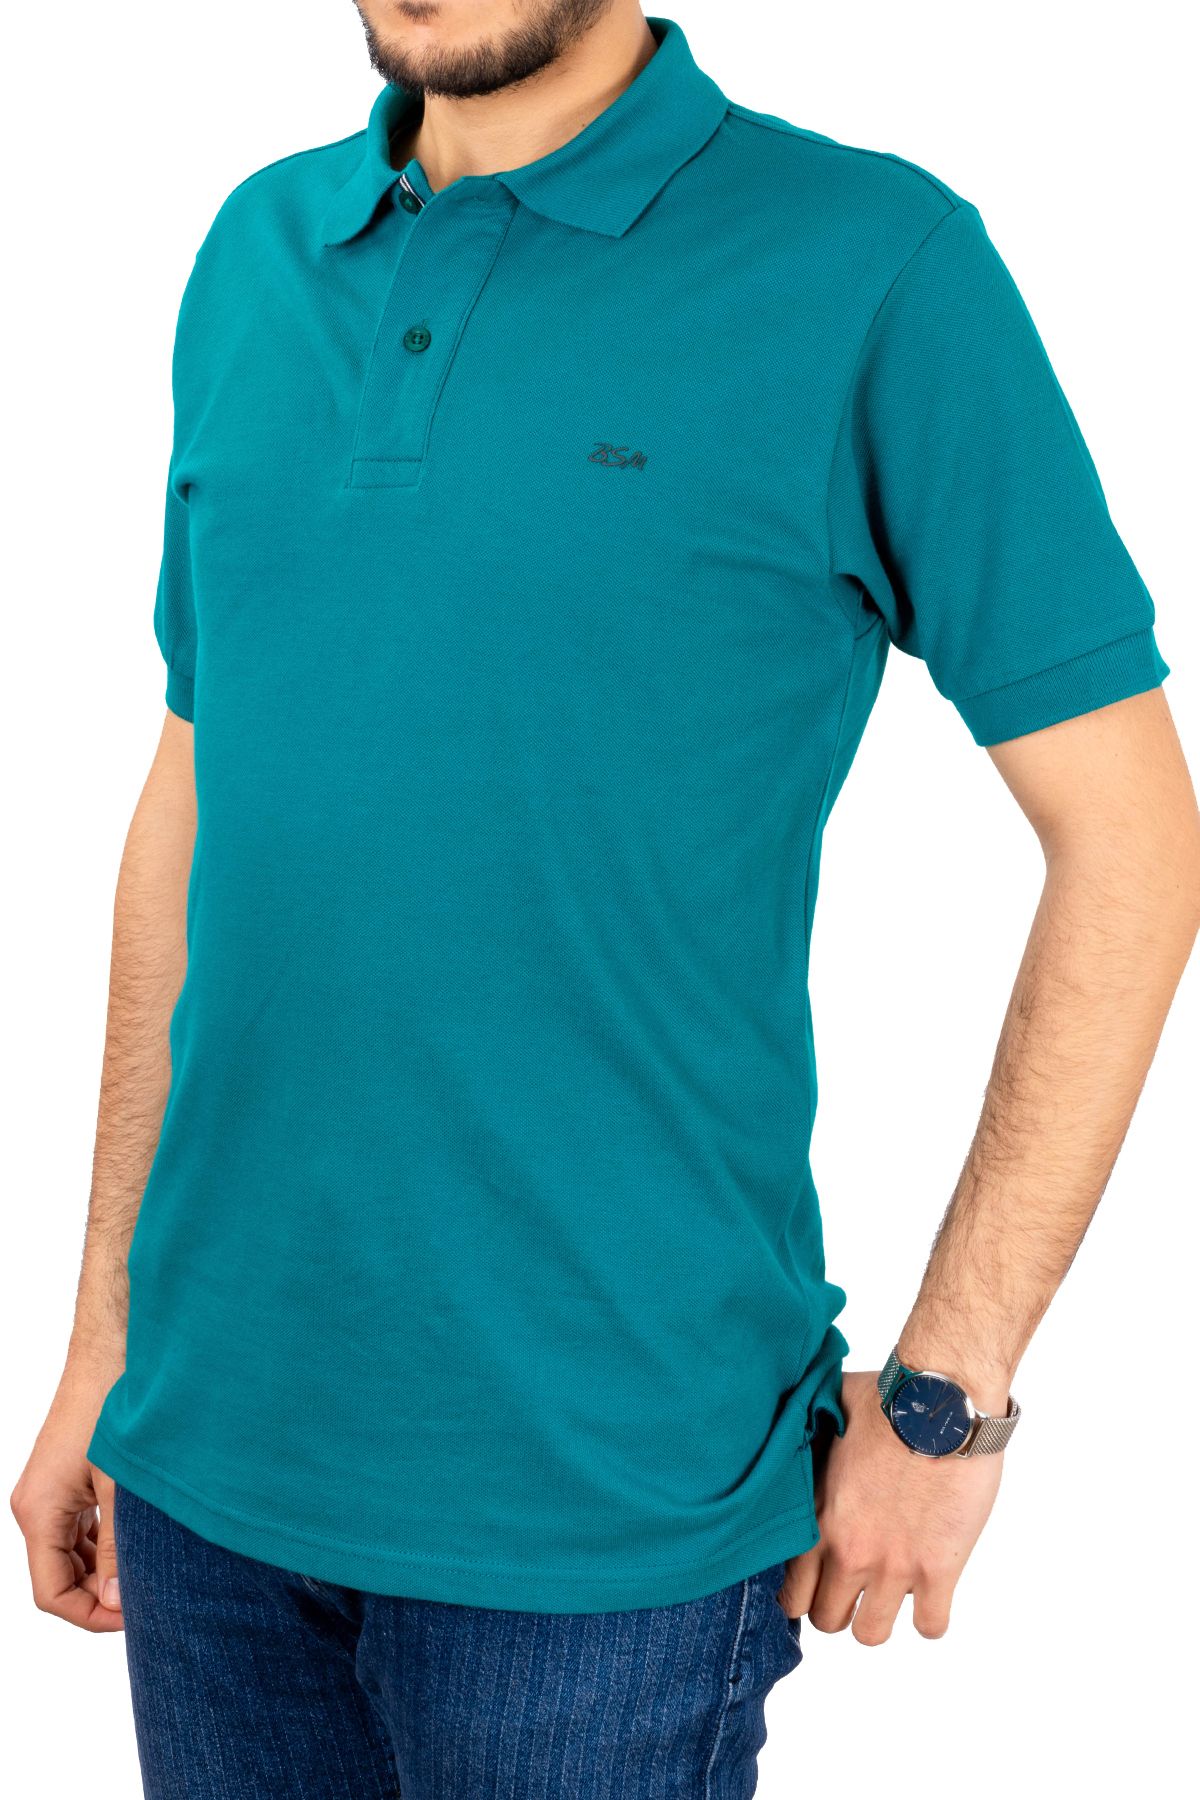 BSM Erkek Yüksek Kalite Kısa Kollu Polo Yaka Petrol Yeşili Pike T-Shirt